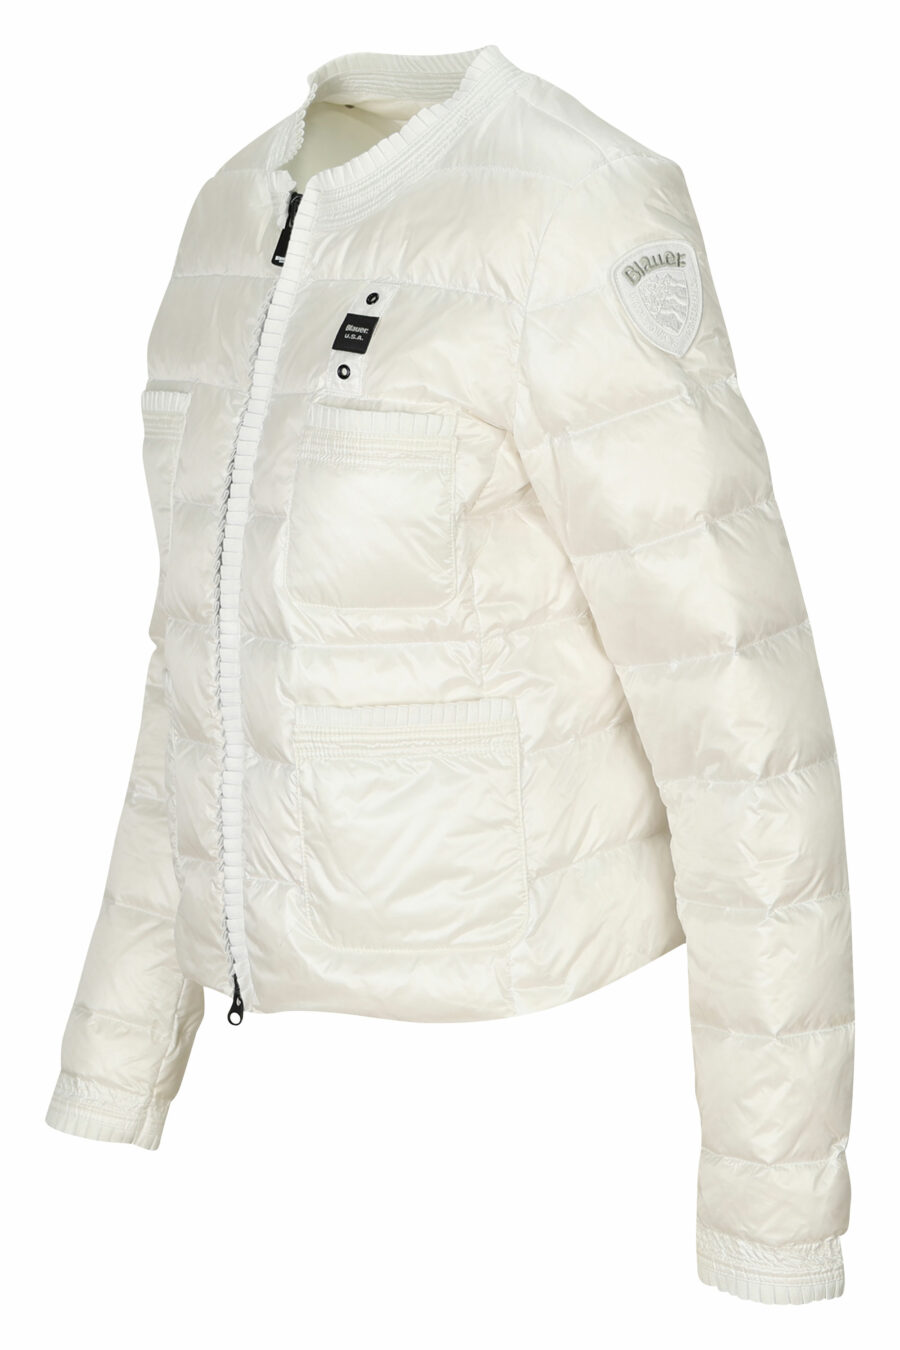 Weiße Jacke mit geraden Linien und Logo-Seitenaufnäher - 8058610764784 1